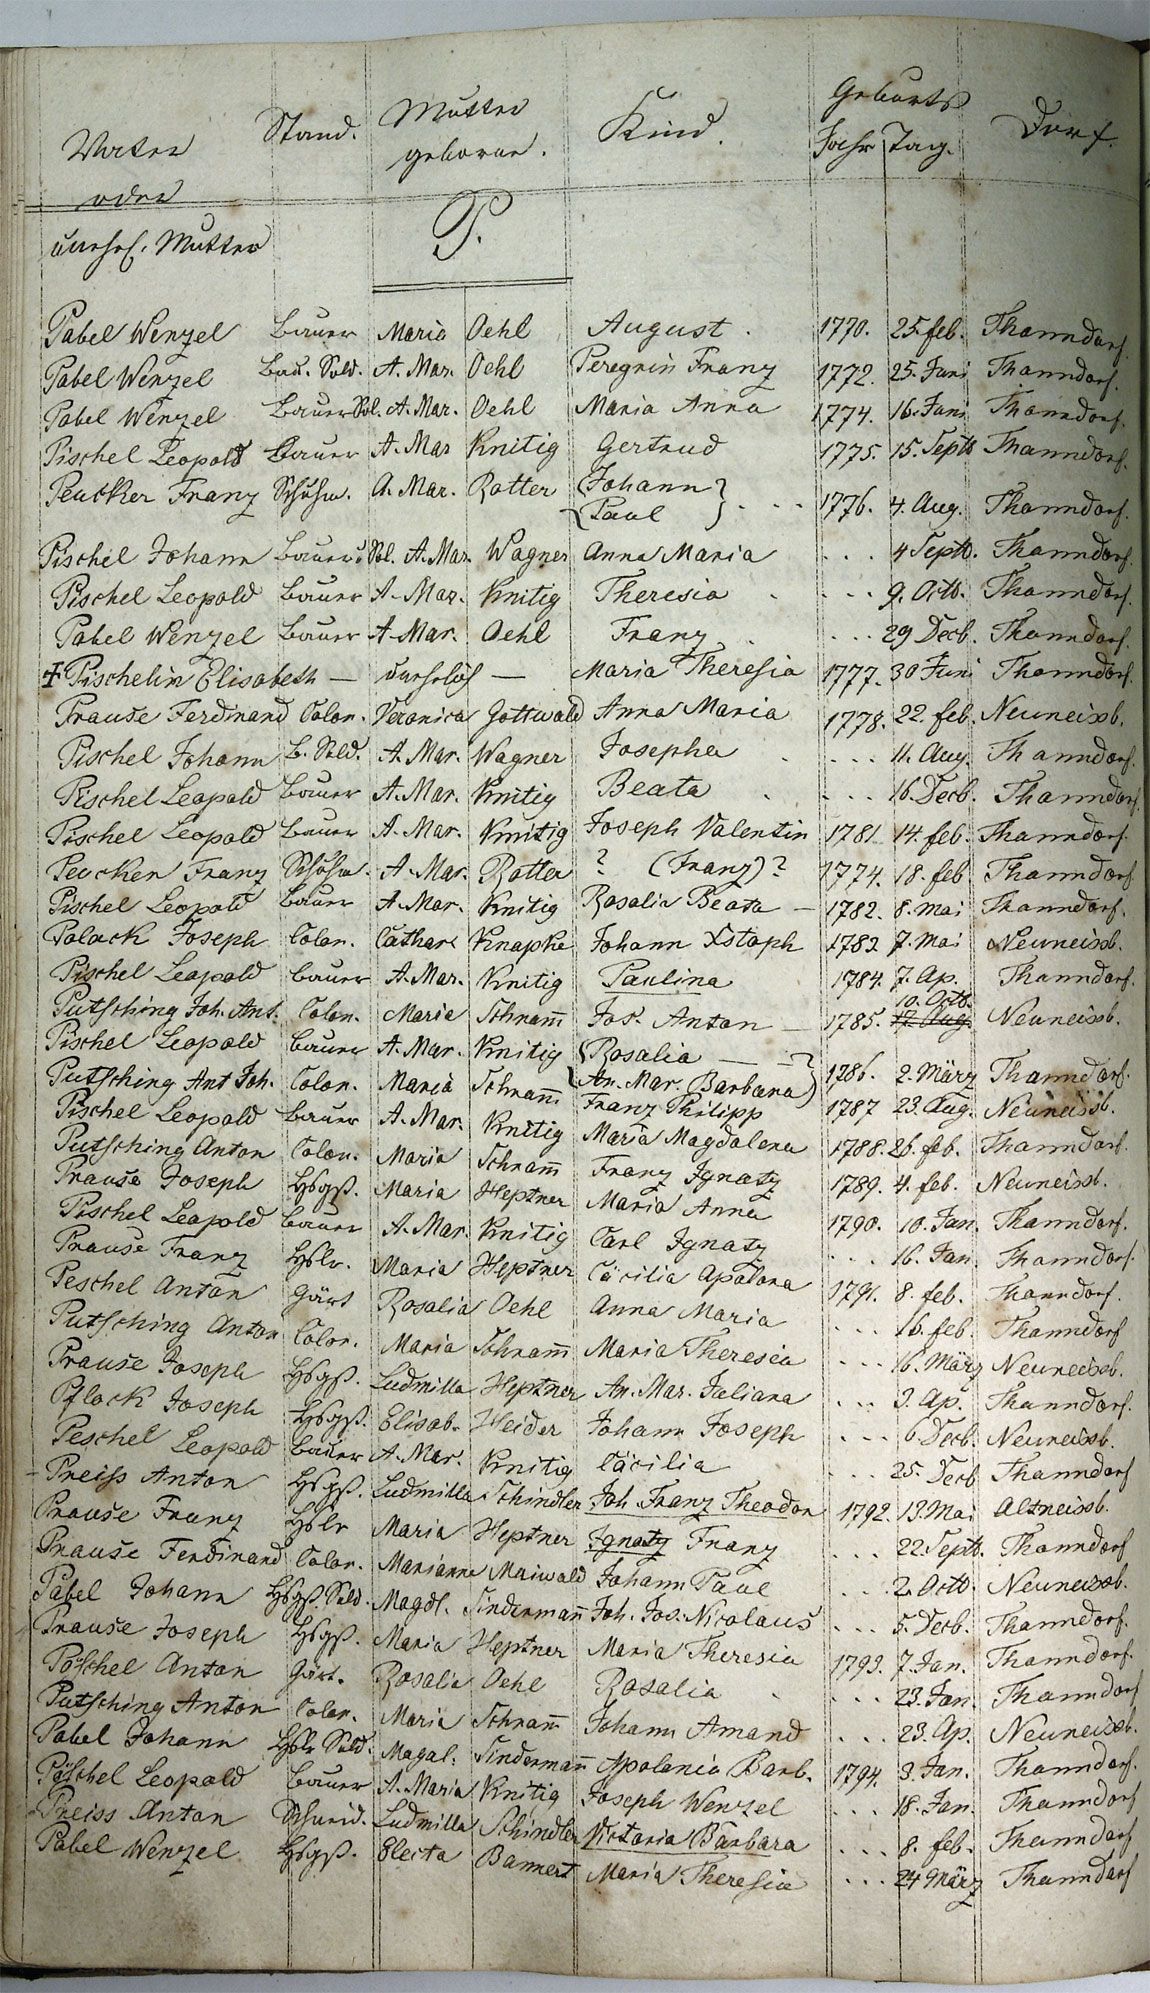 Taufregister 1770 - 1889 Seite 124